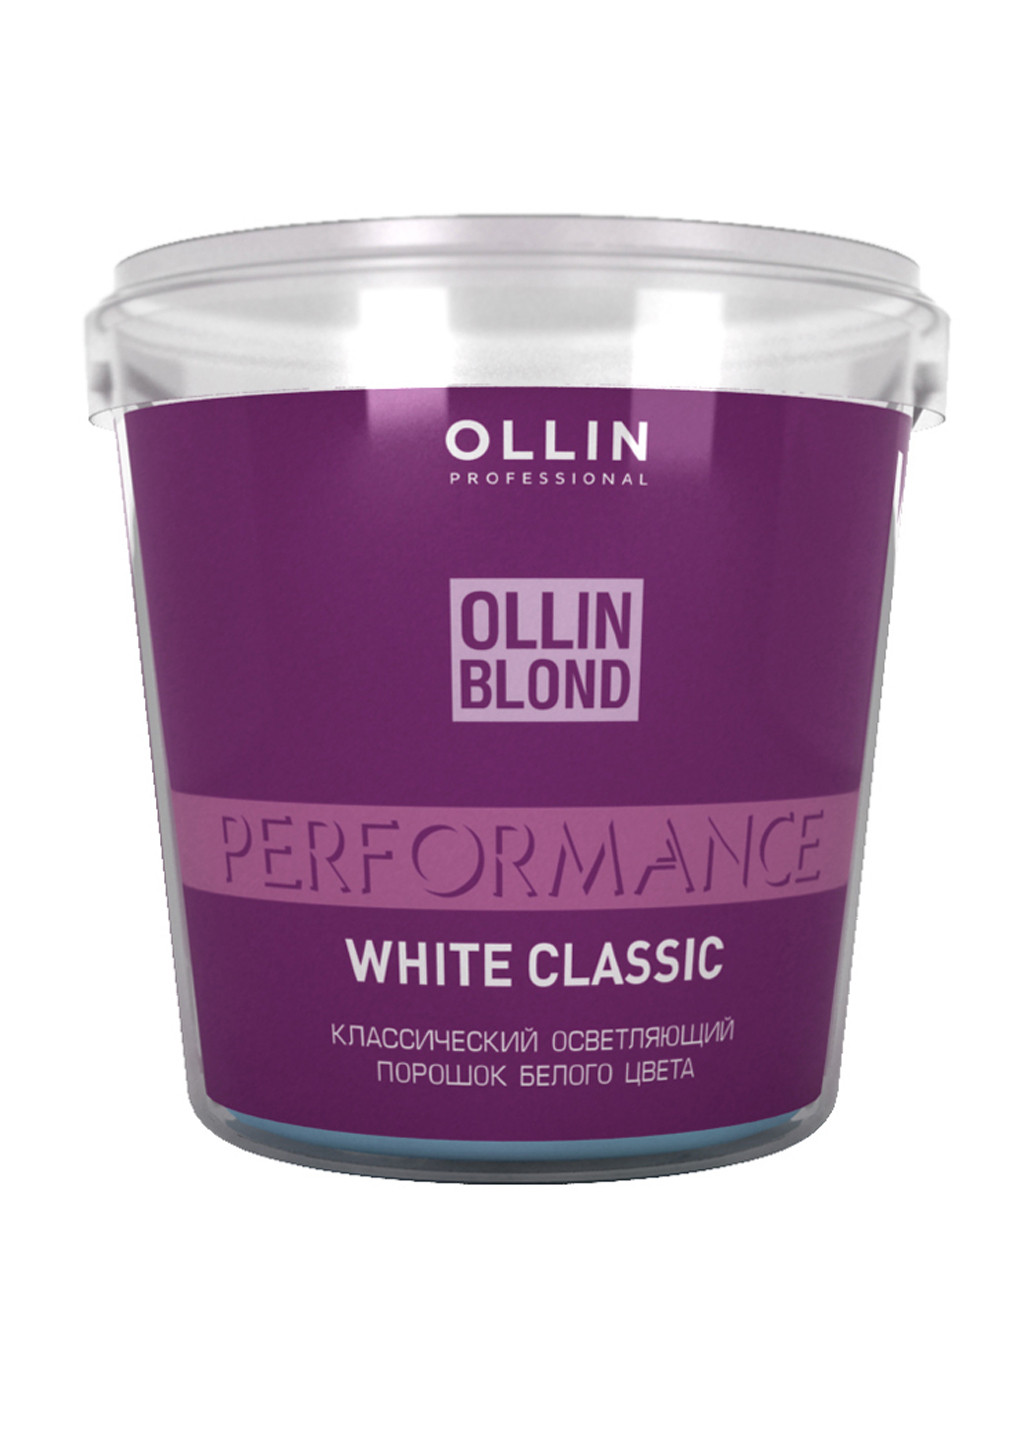 Освітлюючий порошок білого кольору, 500 г Ollin Professional (160741872)